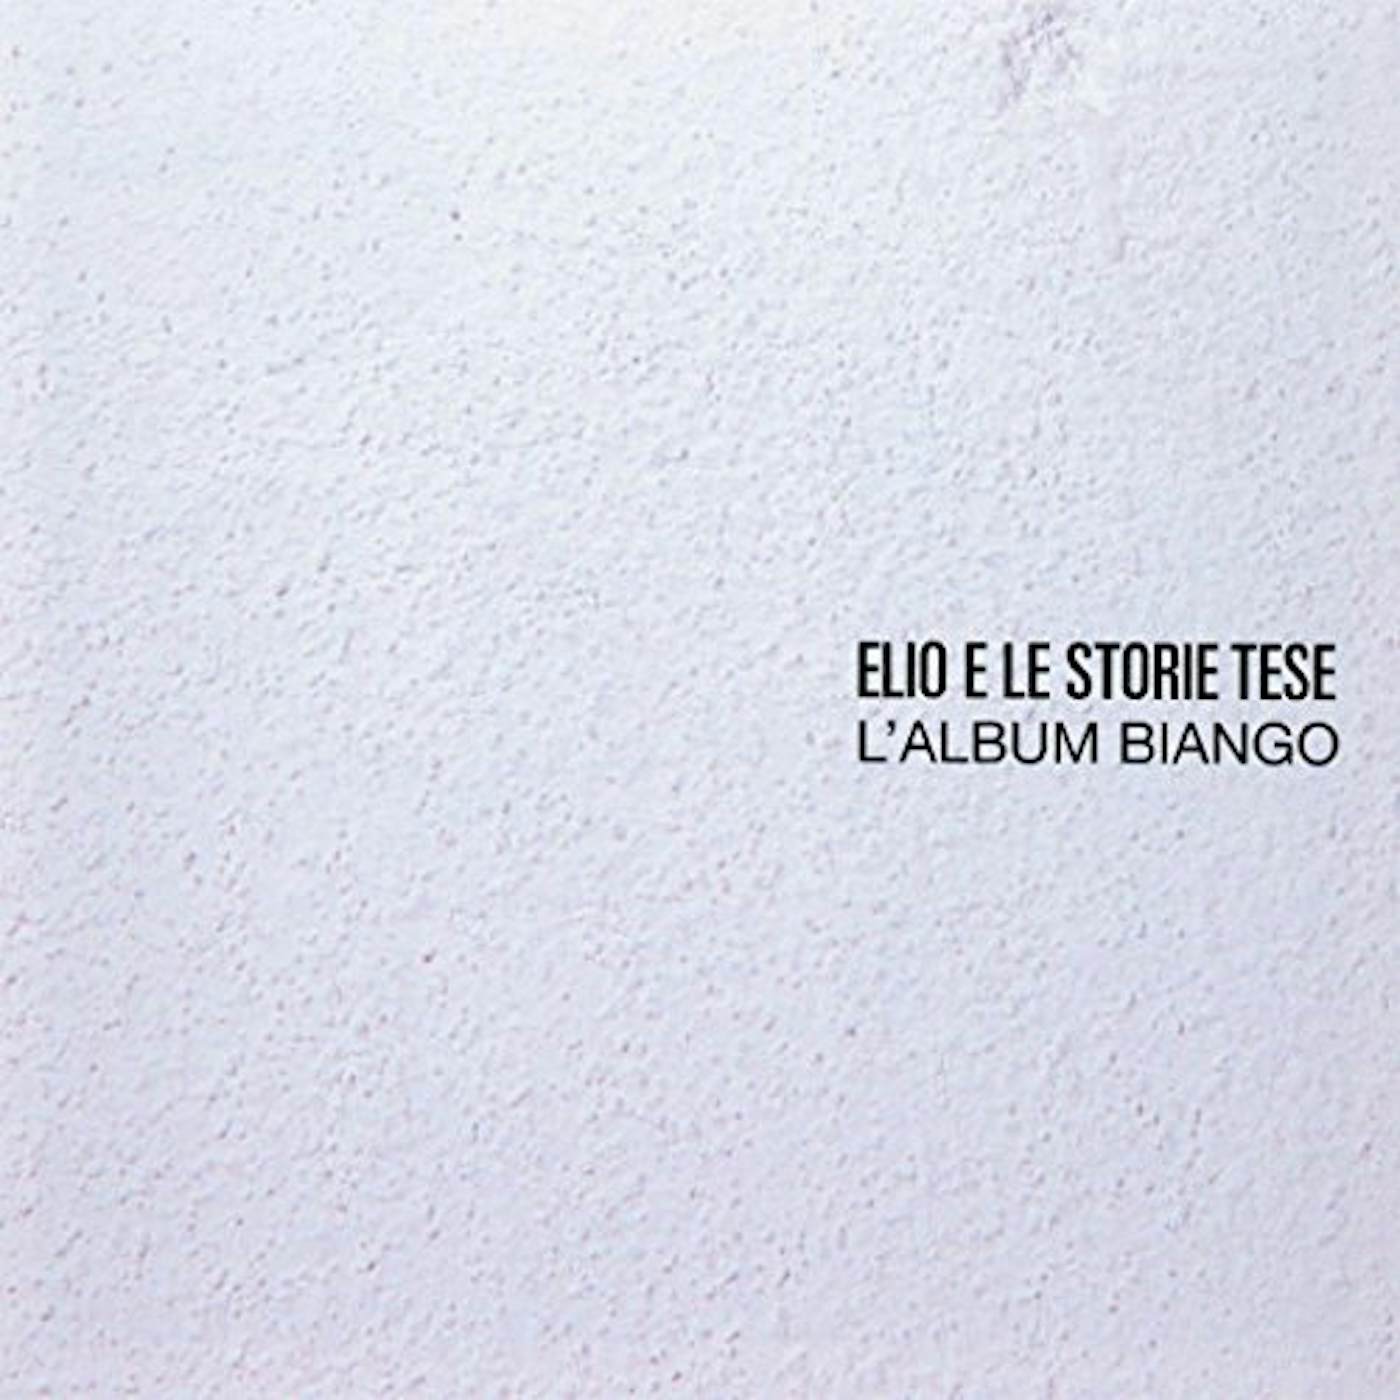 Elio e le Storie Tese ALBUM BIANGO Vinyl Record